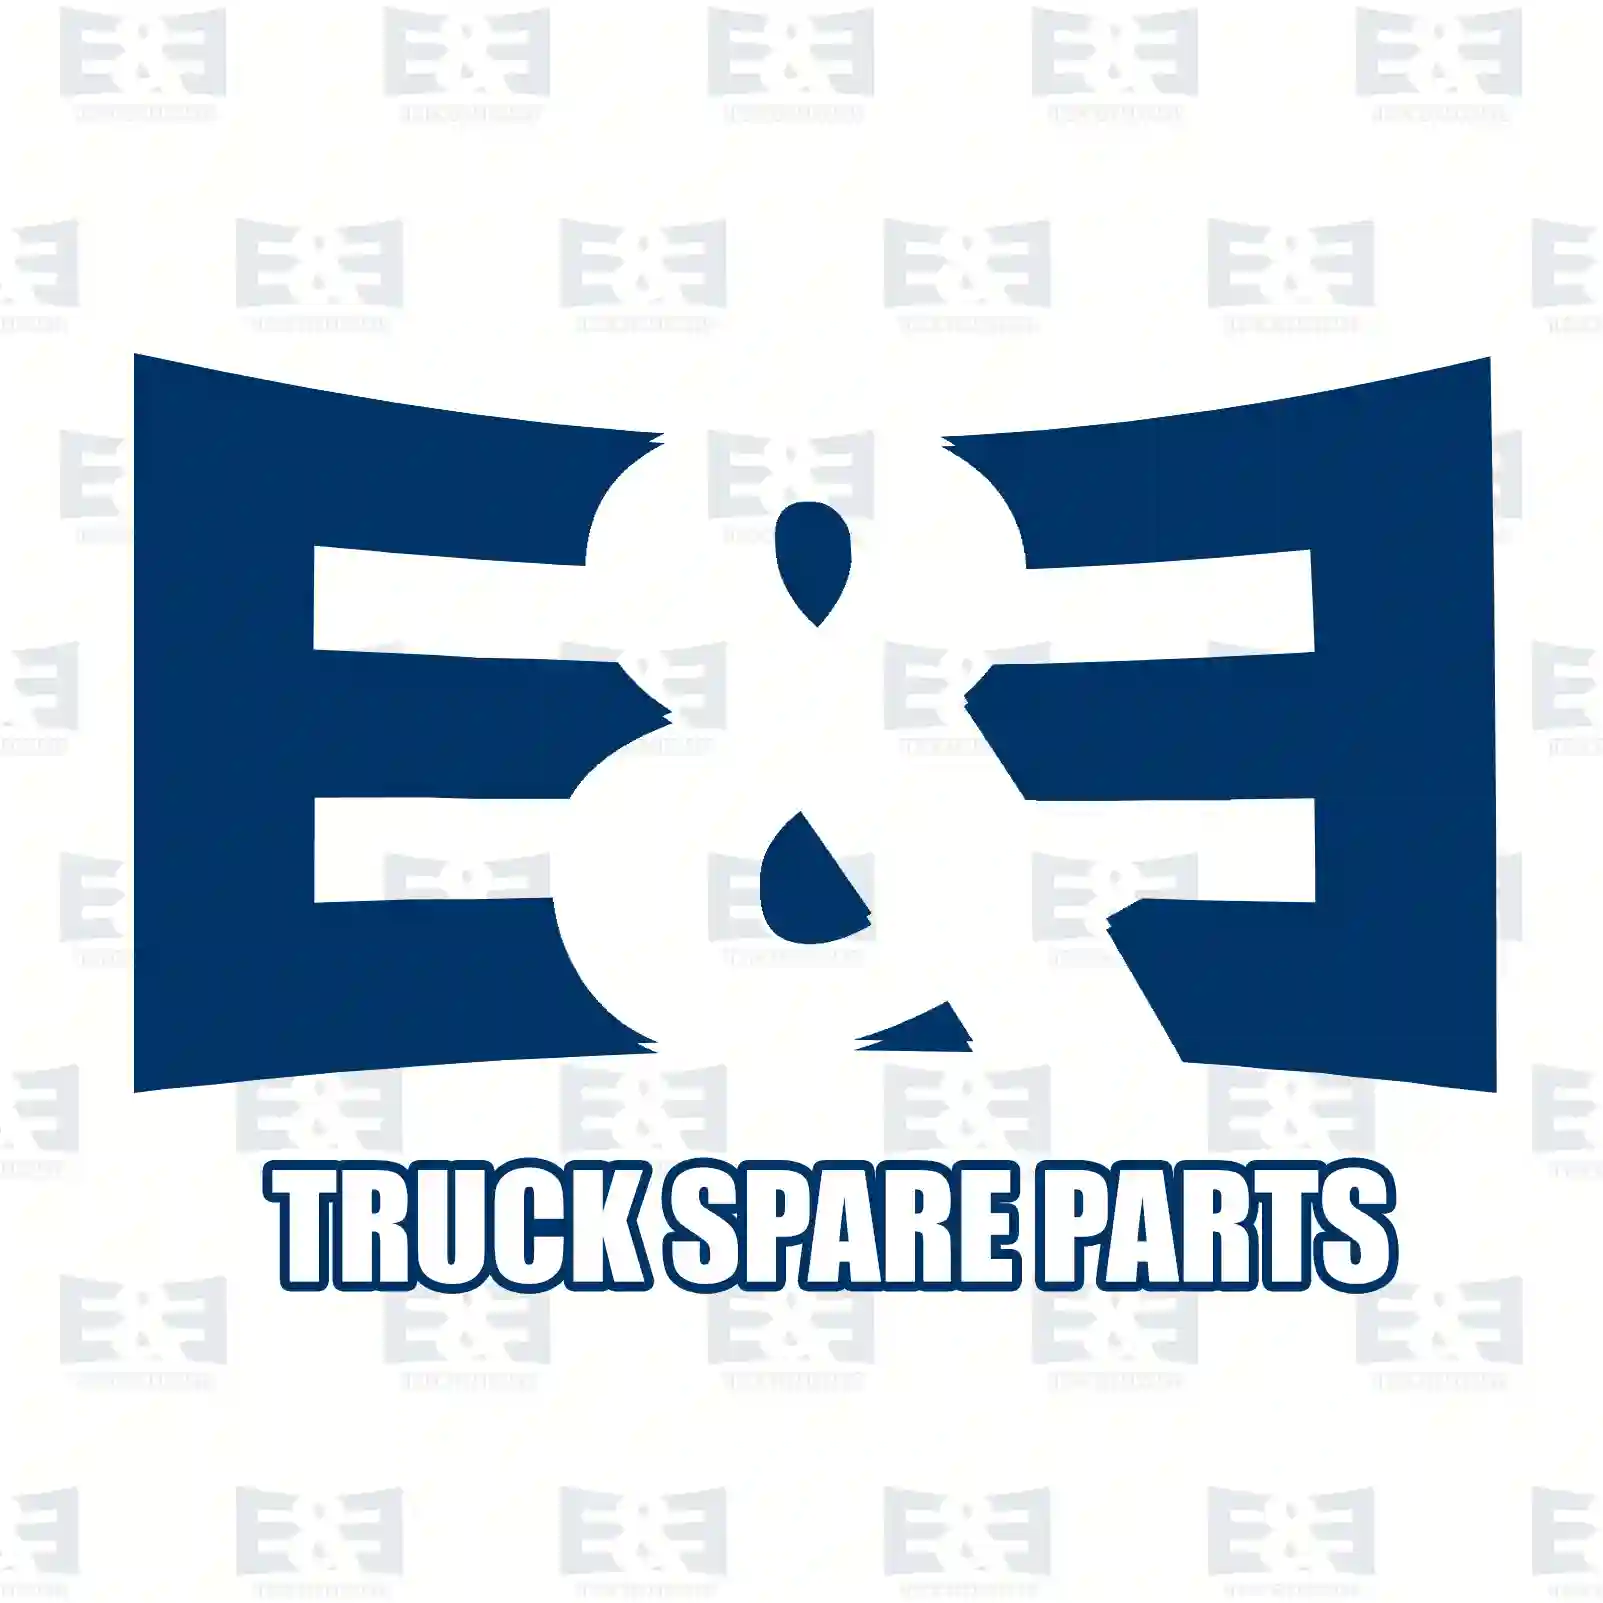 Propeller shaft, 2E2276041, 21479854, 21753207, 22121756 ||  2E2276041 E&E Truck Spare Parts | Truck Spare Parts, Auotomotive Spare Parts Propeller shaft, 2E2276041, 21479854, 21753207, 22121756 ||  2E2276041 E&E Truck Spare Parts | Truck Spare Parts, Auotomotive Spare Parts